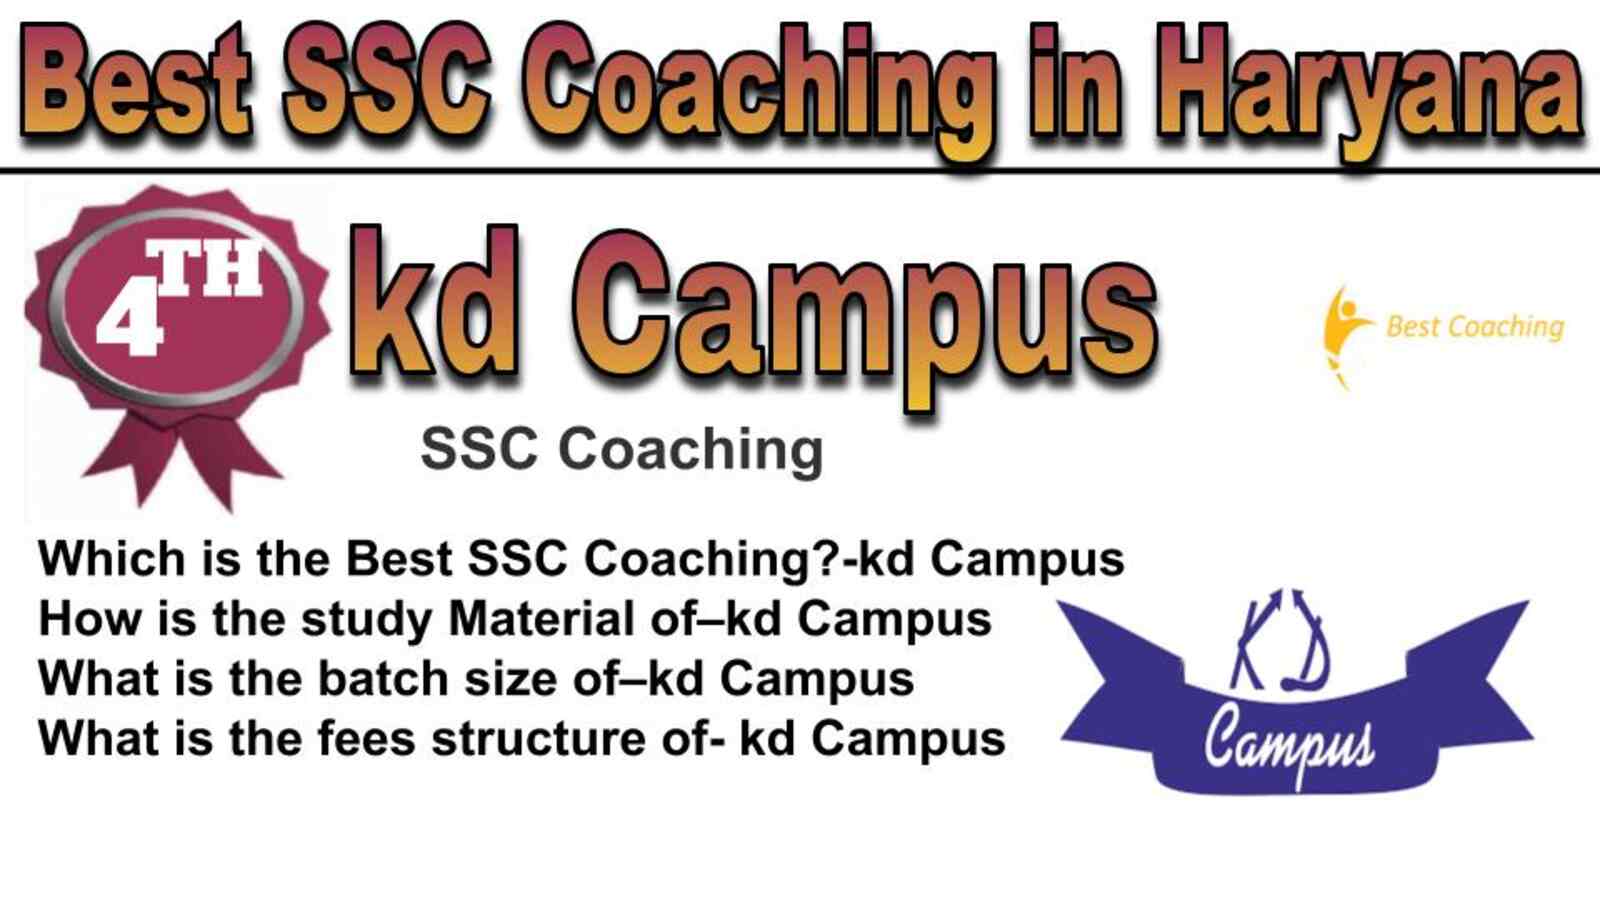 Rank 4 best SSC coaching in Haryana